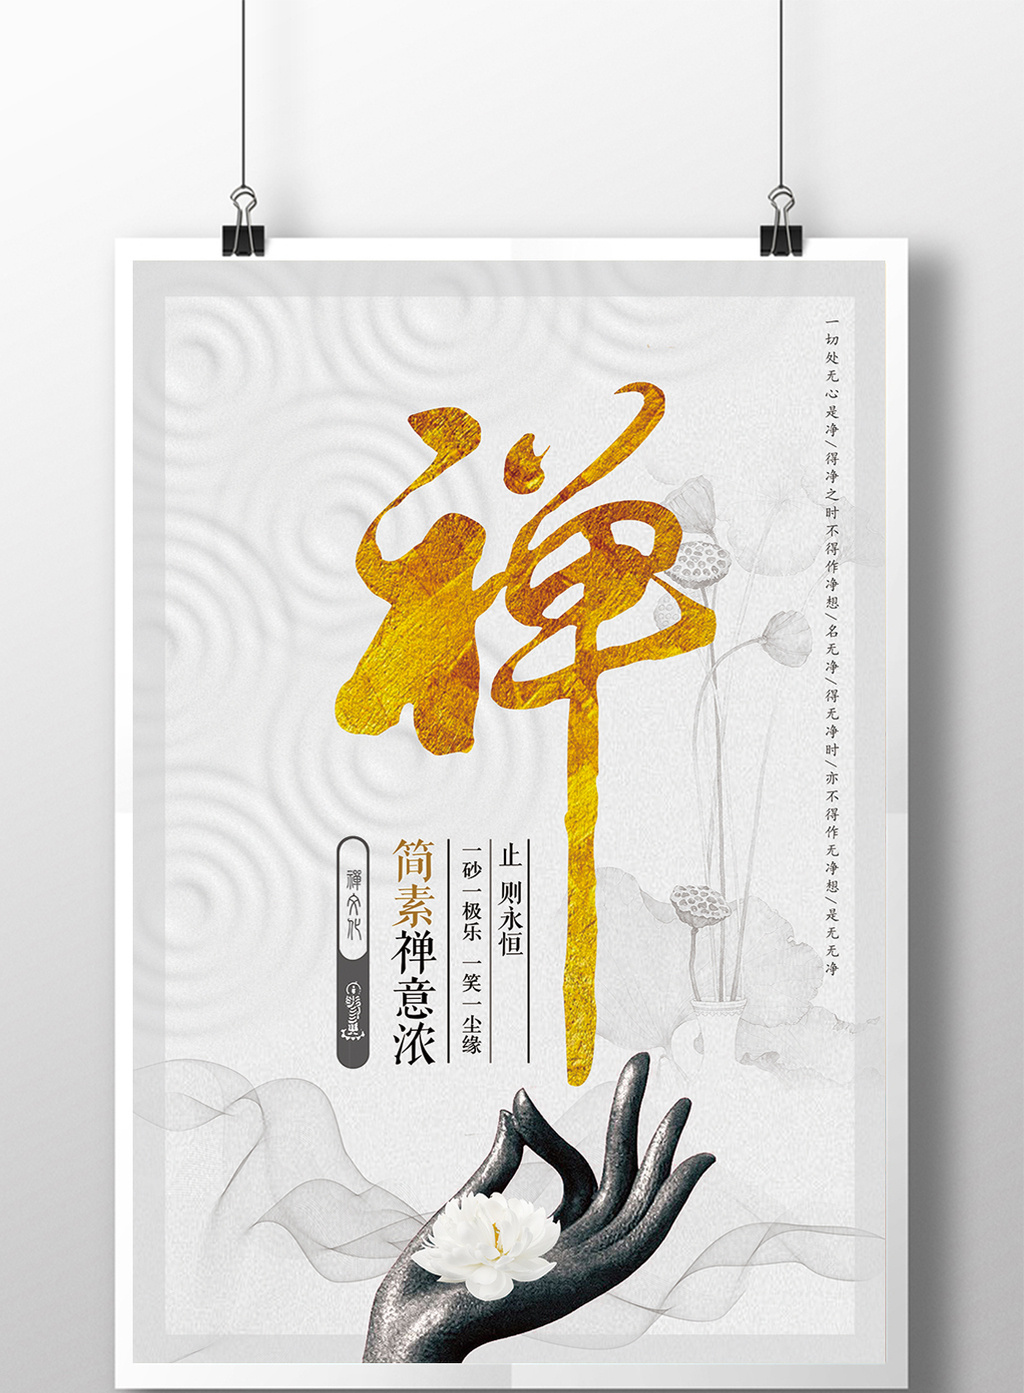 肖像权人物画像及字体仅供参考 包图网提供精美好看的中国风古典禅意